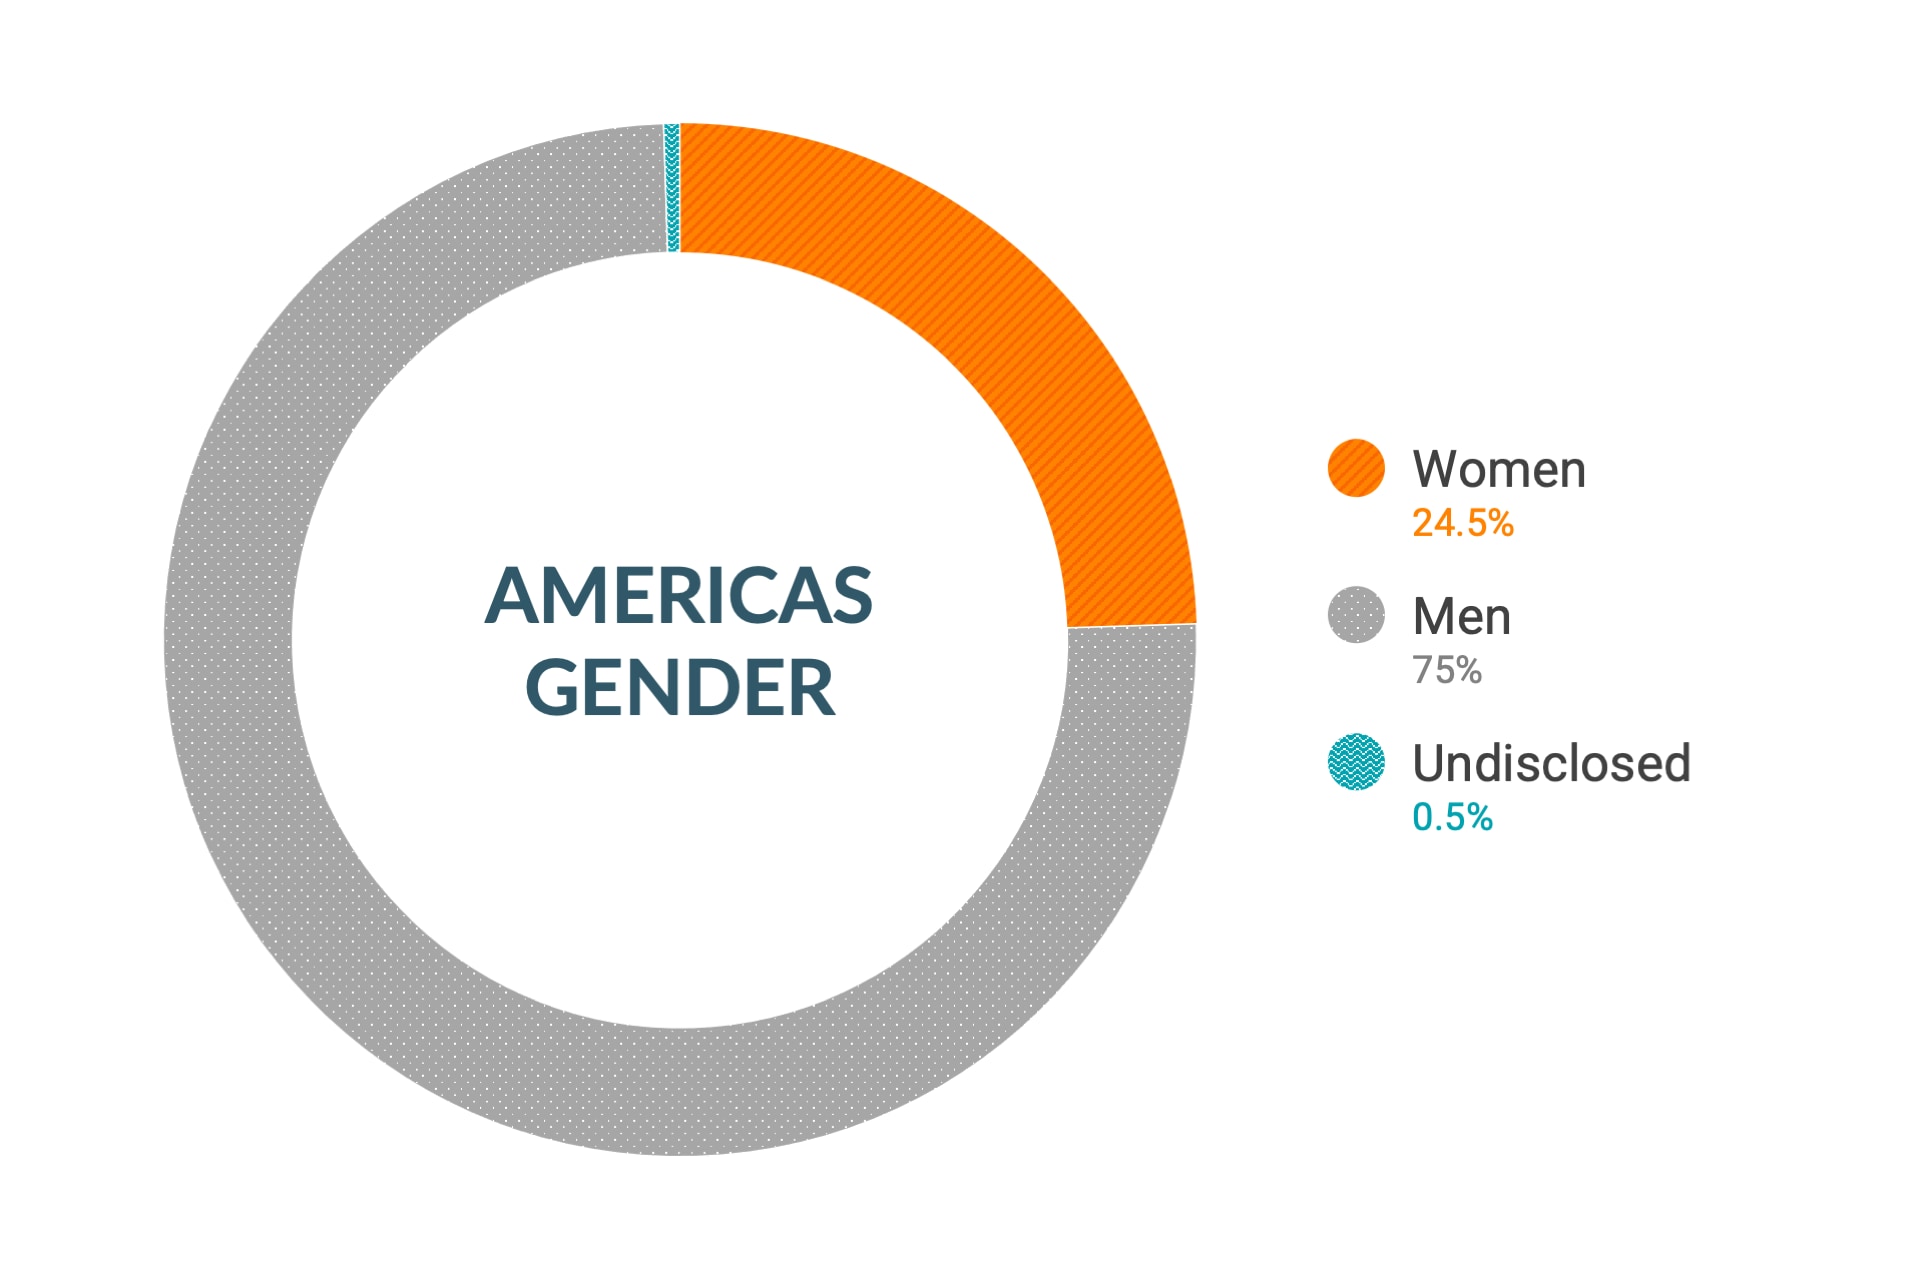 Dane firmy Cloudera dotyczące różnorodności i integracji dla płci w obu Amerykach: kobiety 24%, mężczyźni 76%